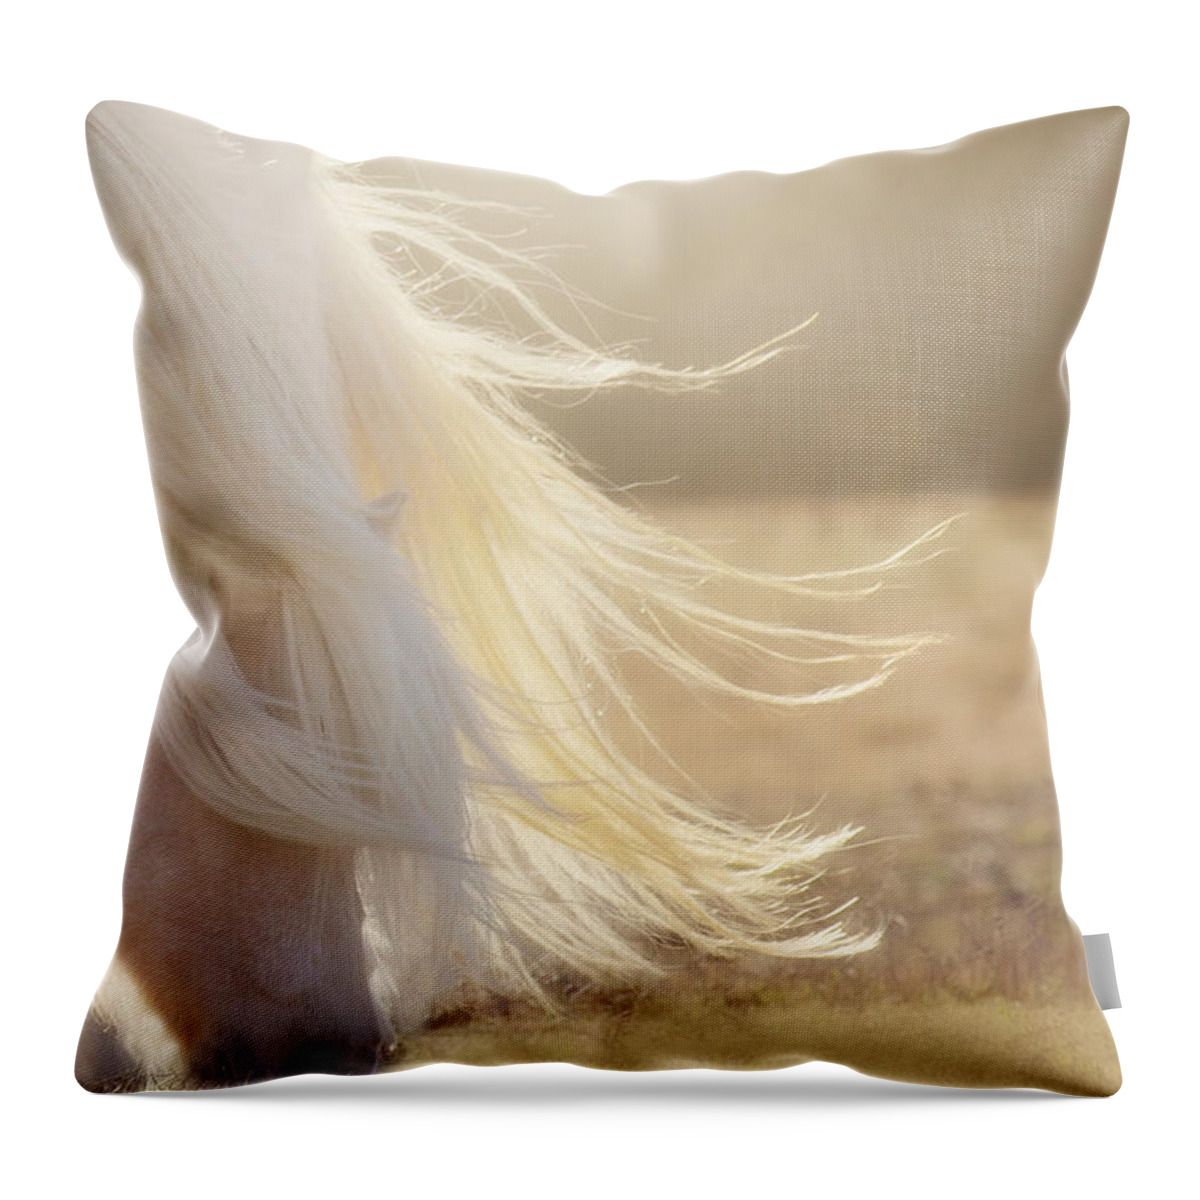 Texas Throw Pillow featuring the photograph Texas Gold by Amanda Smith